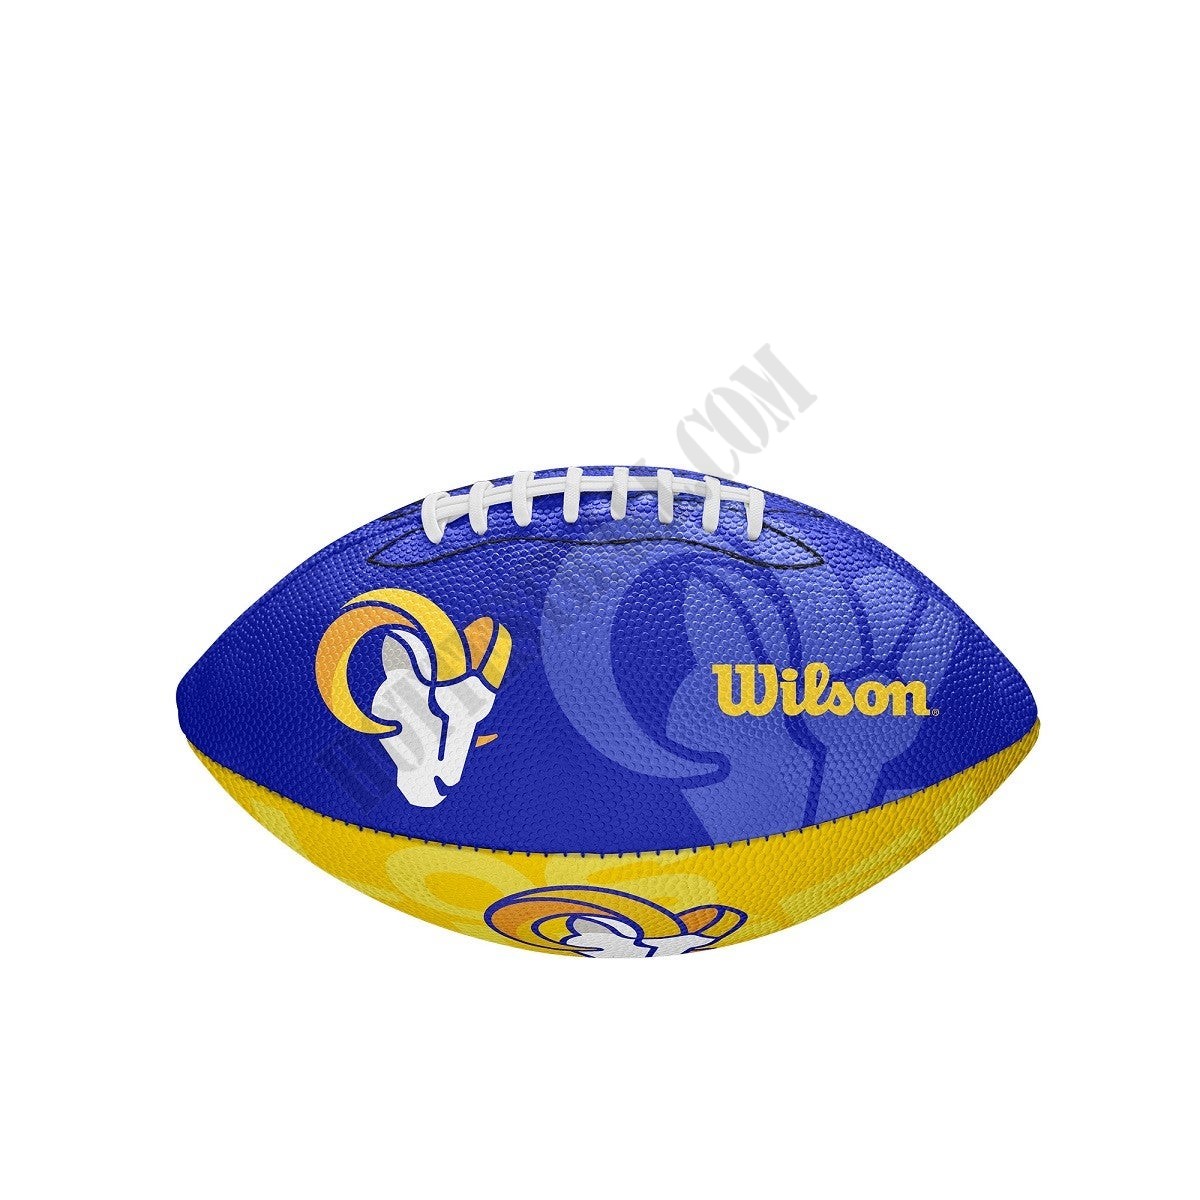 NFL Team Tailgate Football - Los Angeles Rams ● Wilson Promotions - NFL Team Tailgate Football - Los Angeles Rams ● Wilson Promotions